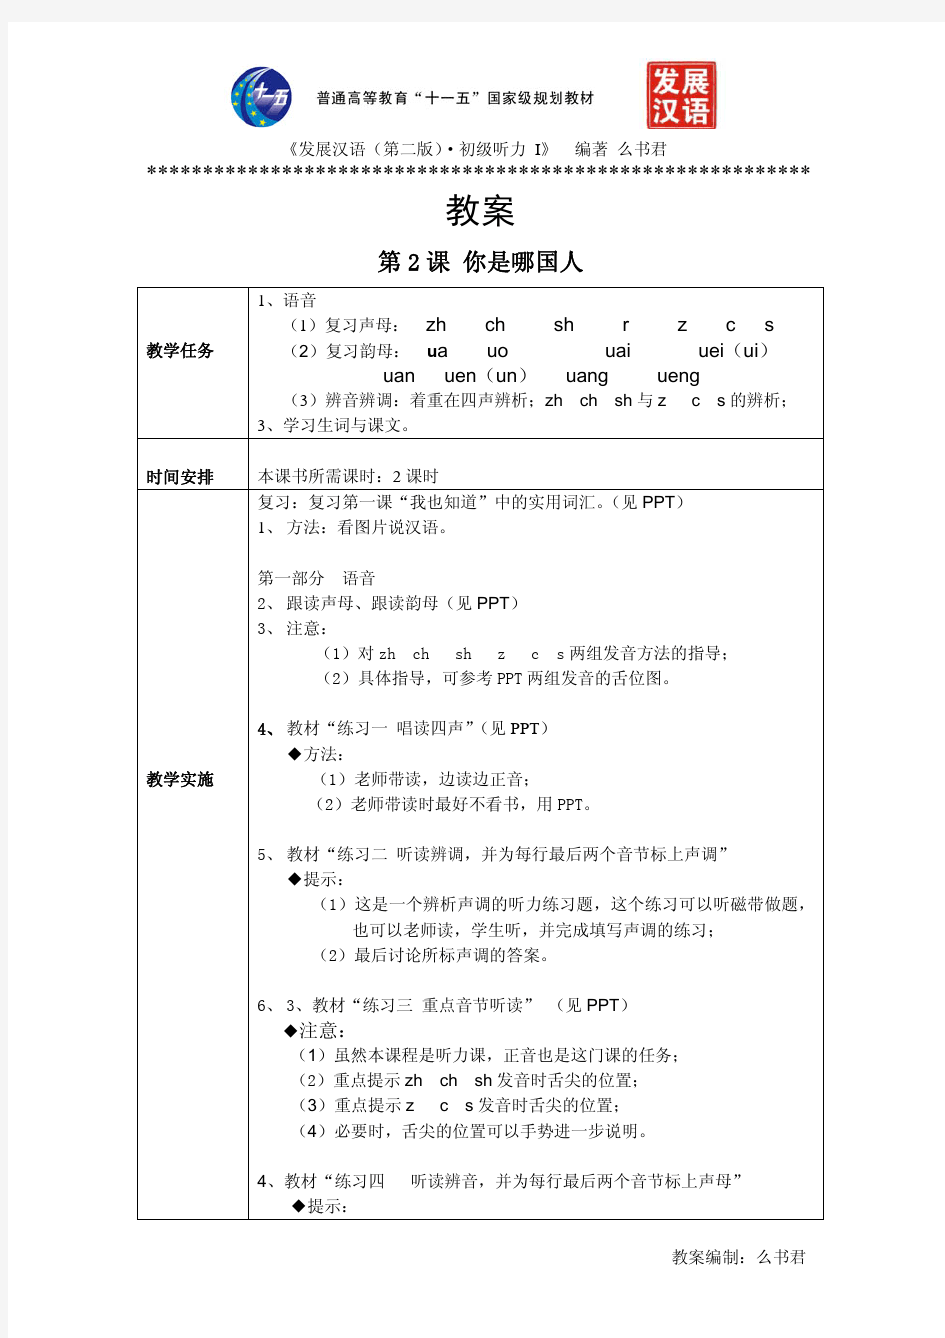 《发展汉语(第二版)初级听力(Ⅰ)》第2课教案